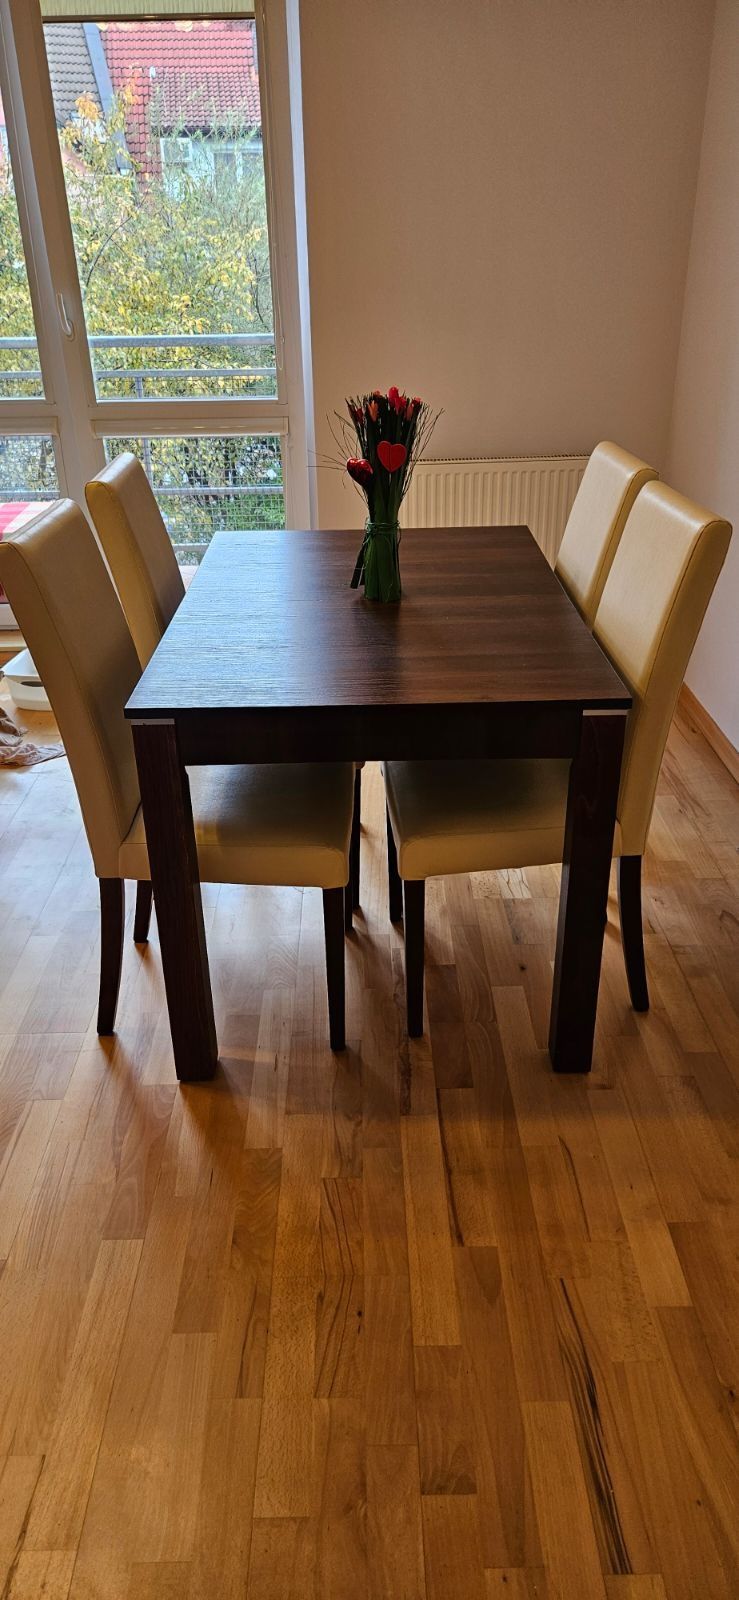 Stół z krzesłami. Idealny do jadalni, kuchni